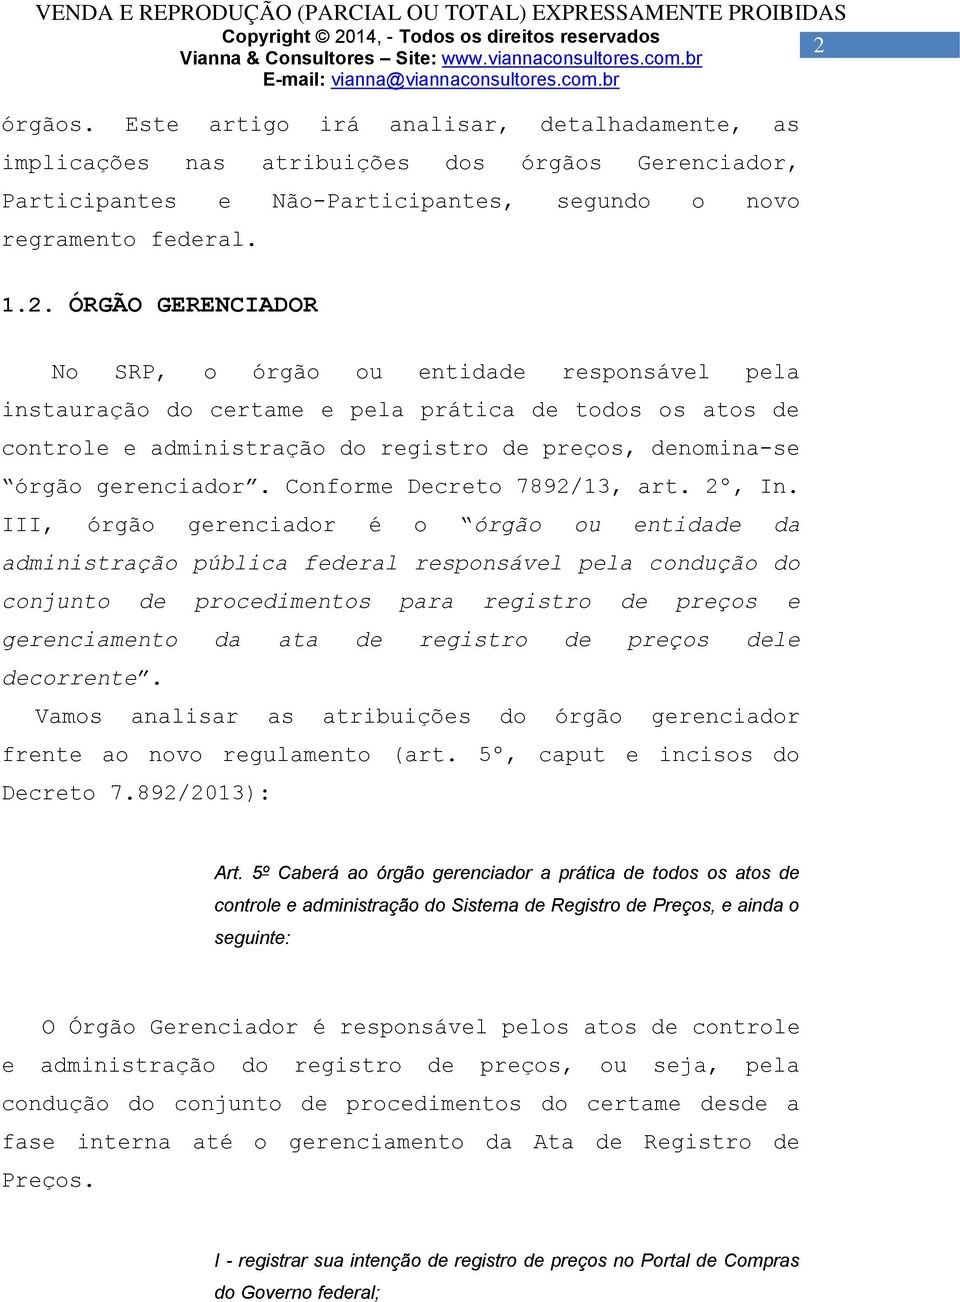 Conforme Decreto 7892/13, art. 2º, In.